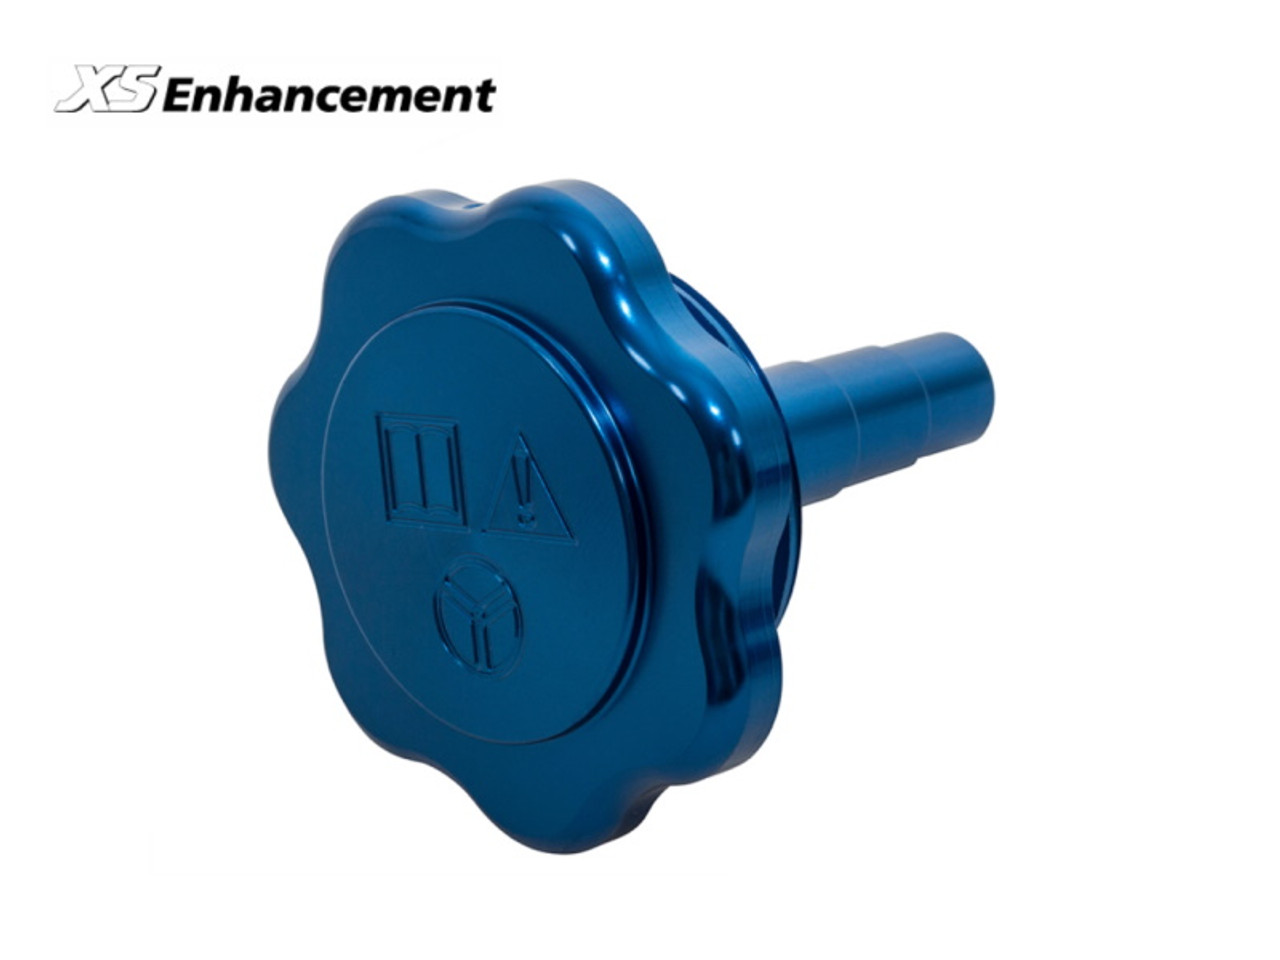 XS Enhancement Blue Power Steering Reservoir Cap - DA8895